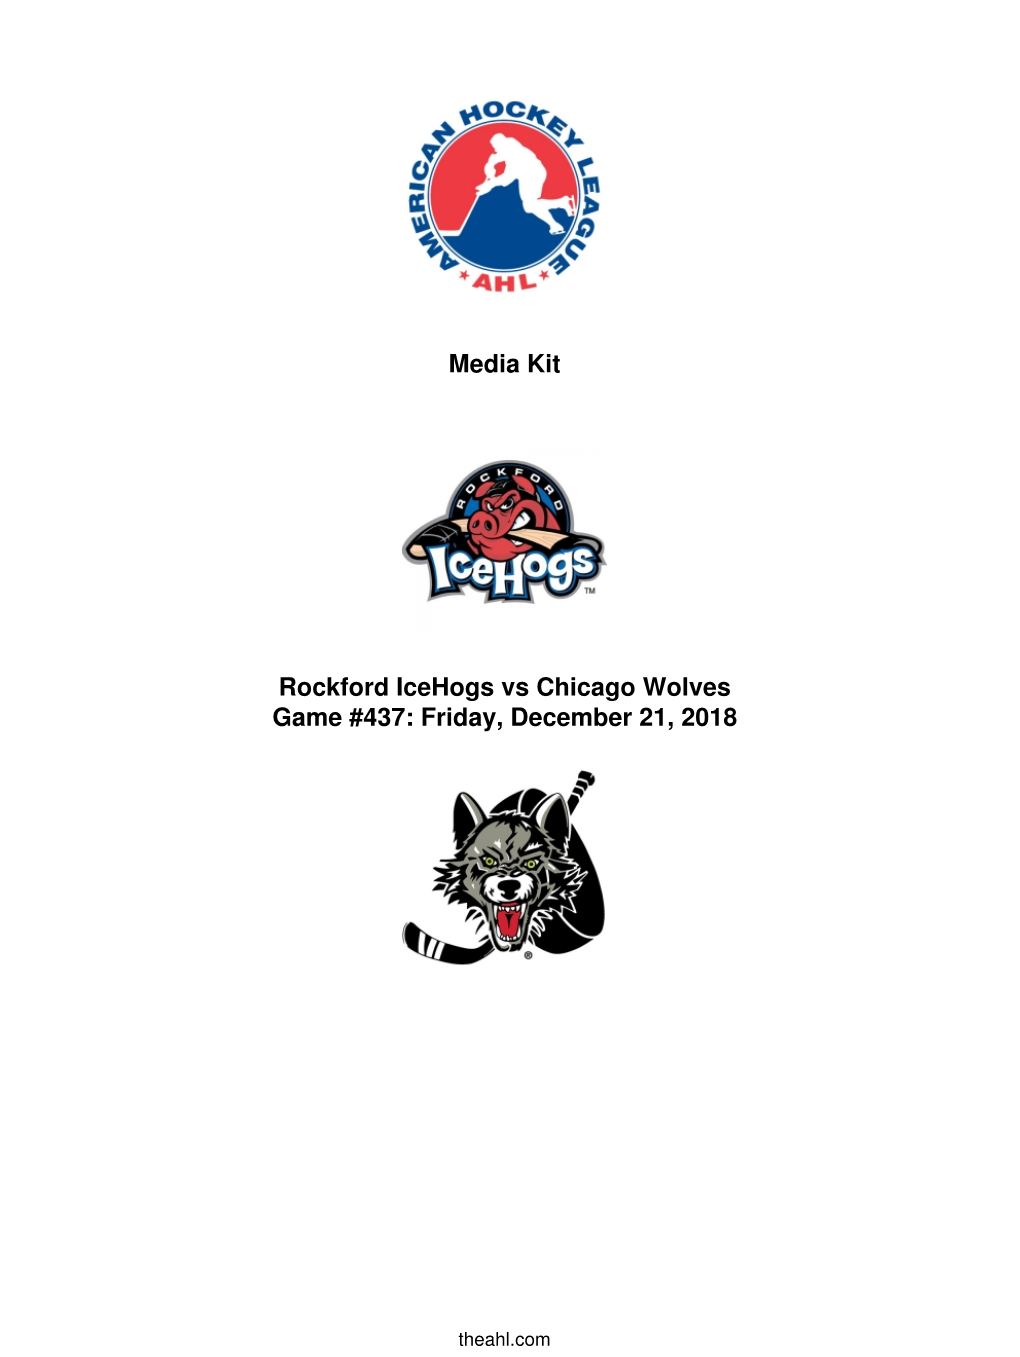 Media Kit Rockford Icehogs Vs Chicago Wolves Game #437